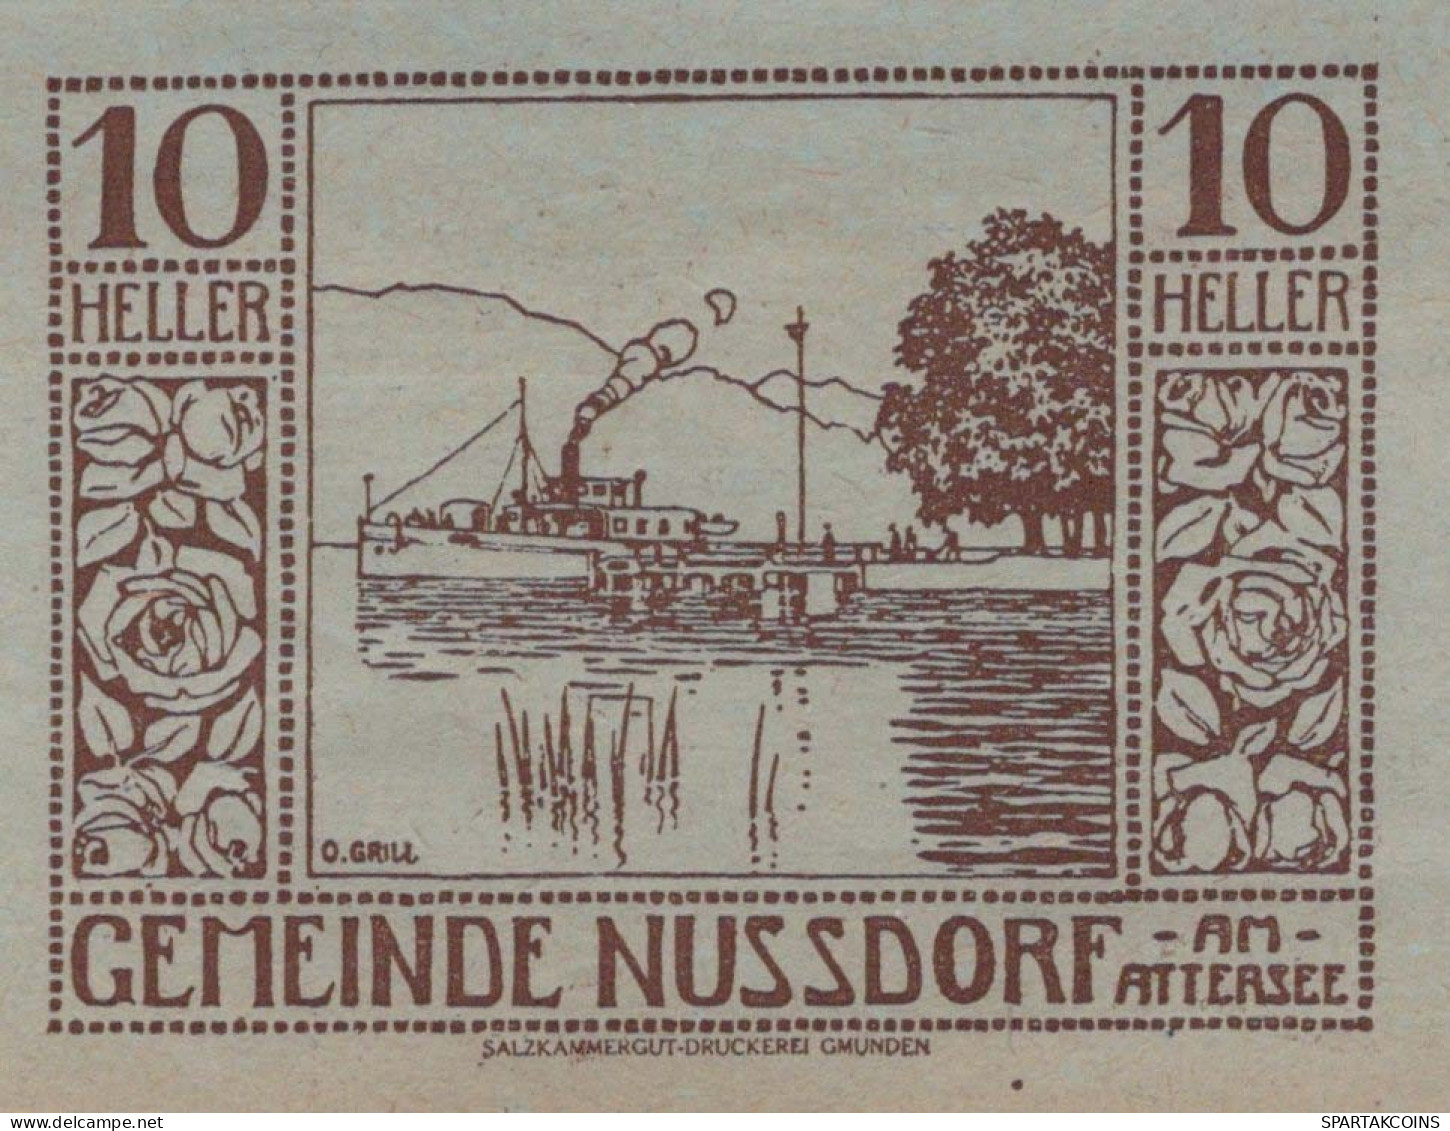 10 HELLER 1920 Stadt NUSSDORF AM ATTERSEE Oberösterreich Österreich Notgeld Papiergeld Banknote #PG636 - [11] Local Banknote Issues